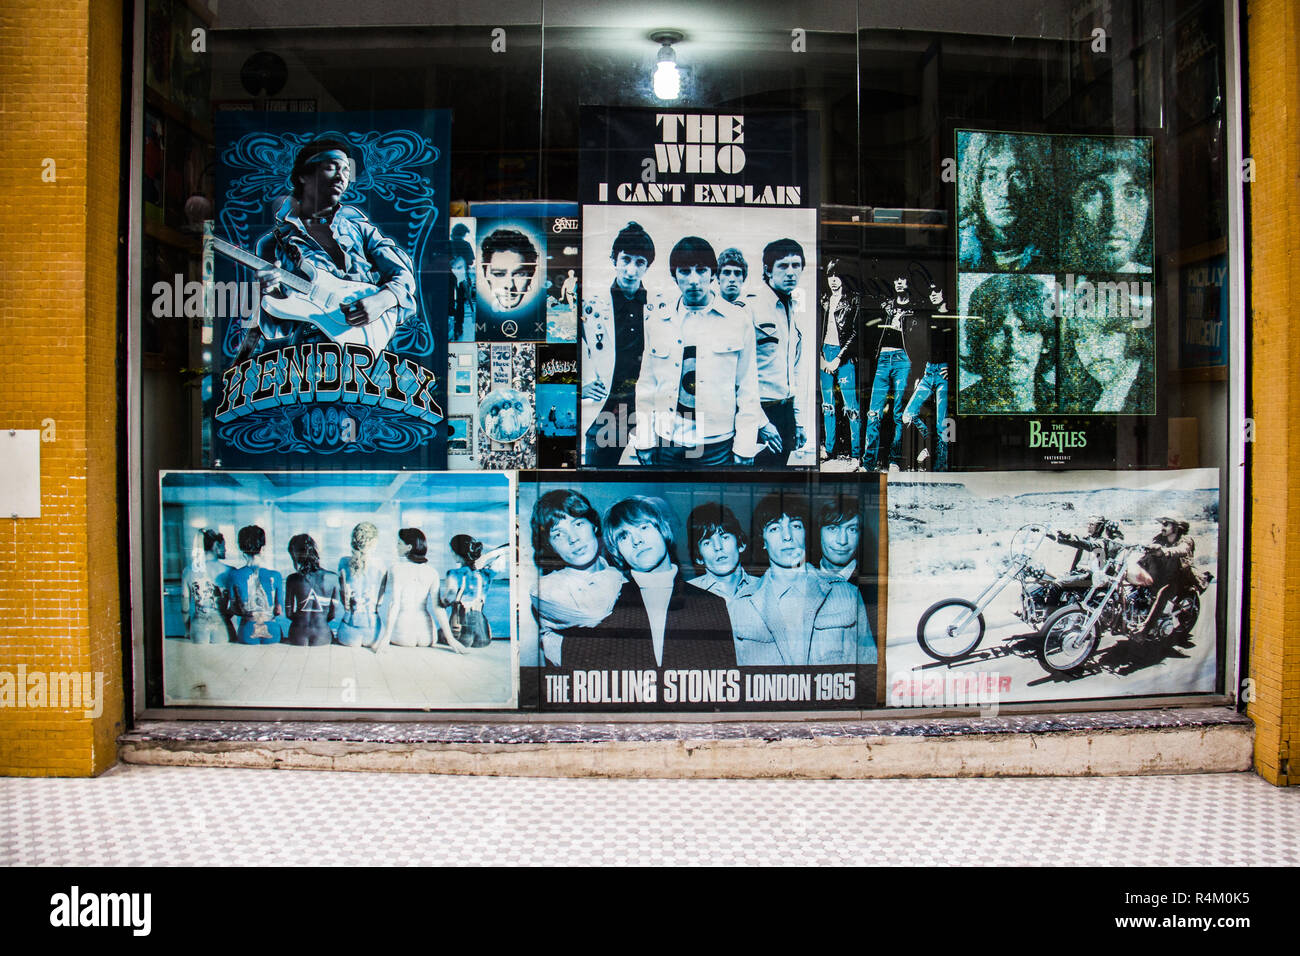 Coole Wallpaper Hintergrund Einer Vinyl Record Store Mit Classic Rock Cover Und Poster Auf Der Vorderseite Glas Schaufenster Keine Menschen Stockfotografie Alamy